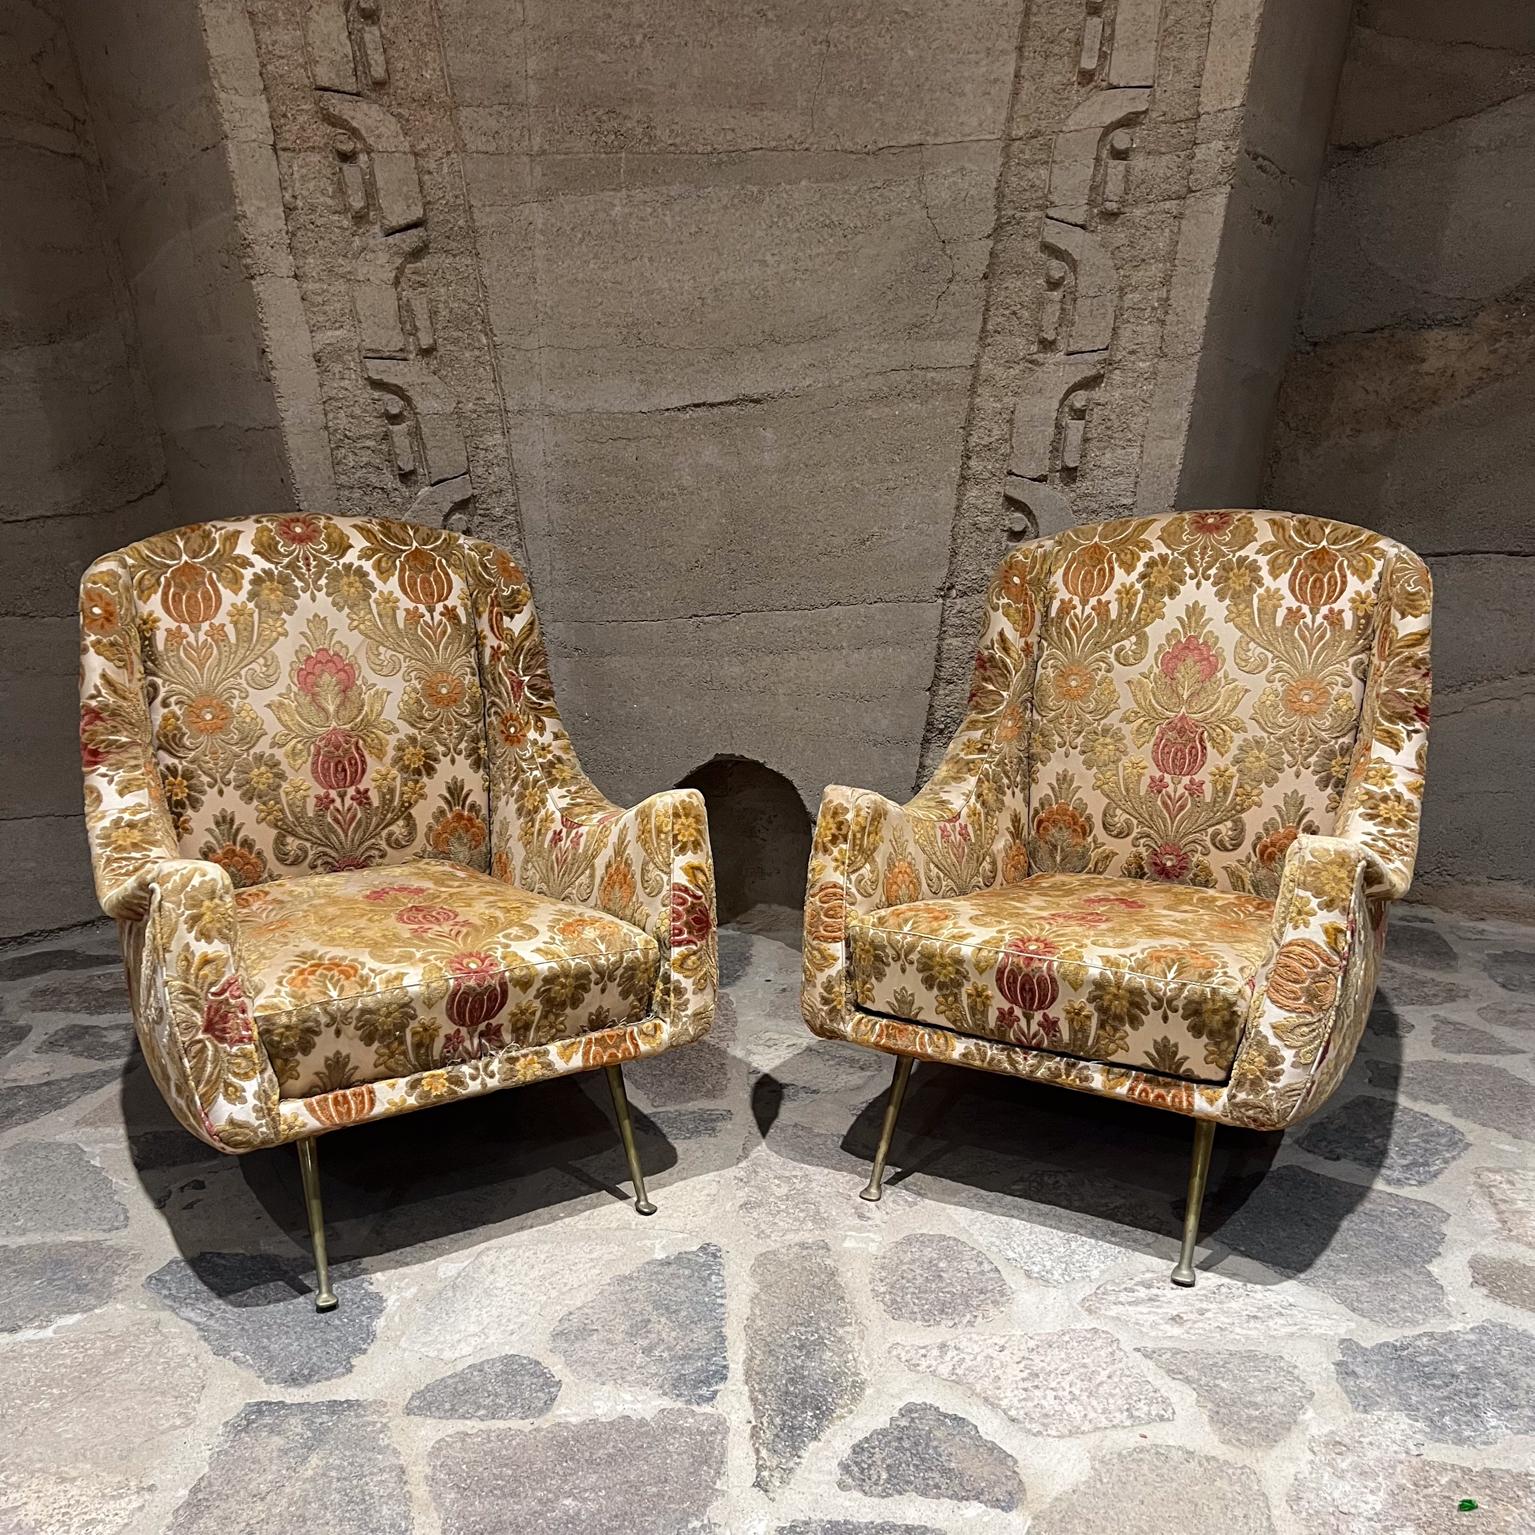 1950er Jahre Paolo Buffa zugeschrieben sexy Lounge-Stühle gemacht Italien.
Verkauf als Paar
Kein Etikett vorhanden, zugeschrieben Paolo Buffa. 
originale Polsterung mit Blumenmuster.
skulpturale Beine aus massivem Messing mit Vintage-Patina
31 H x